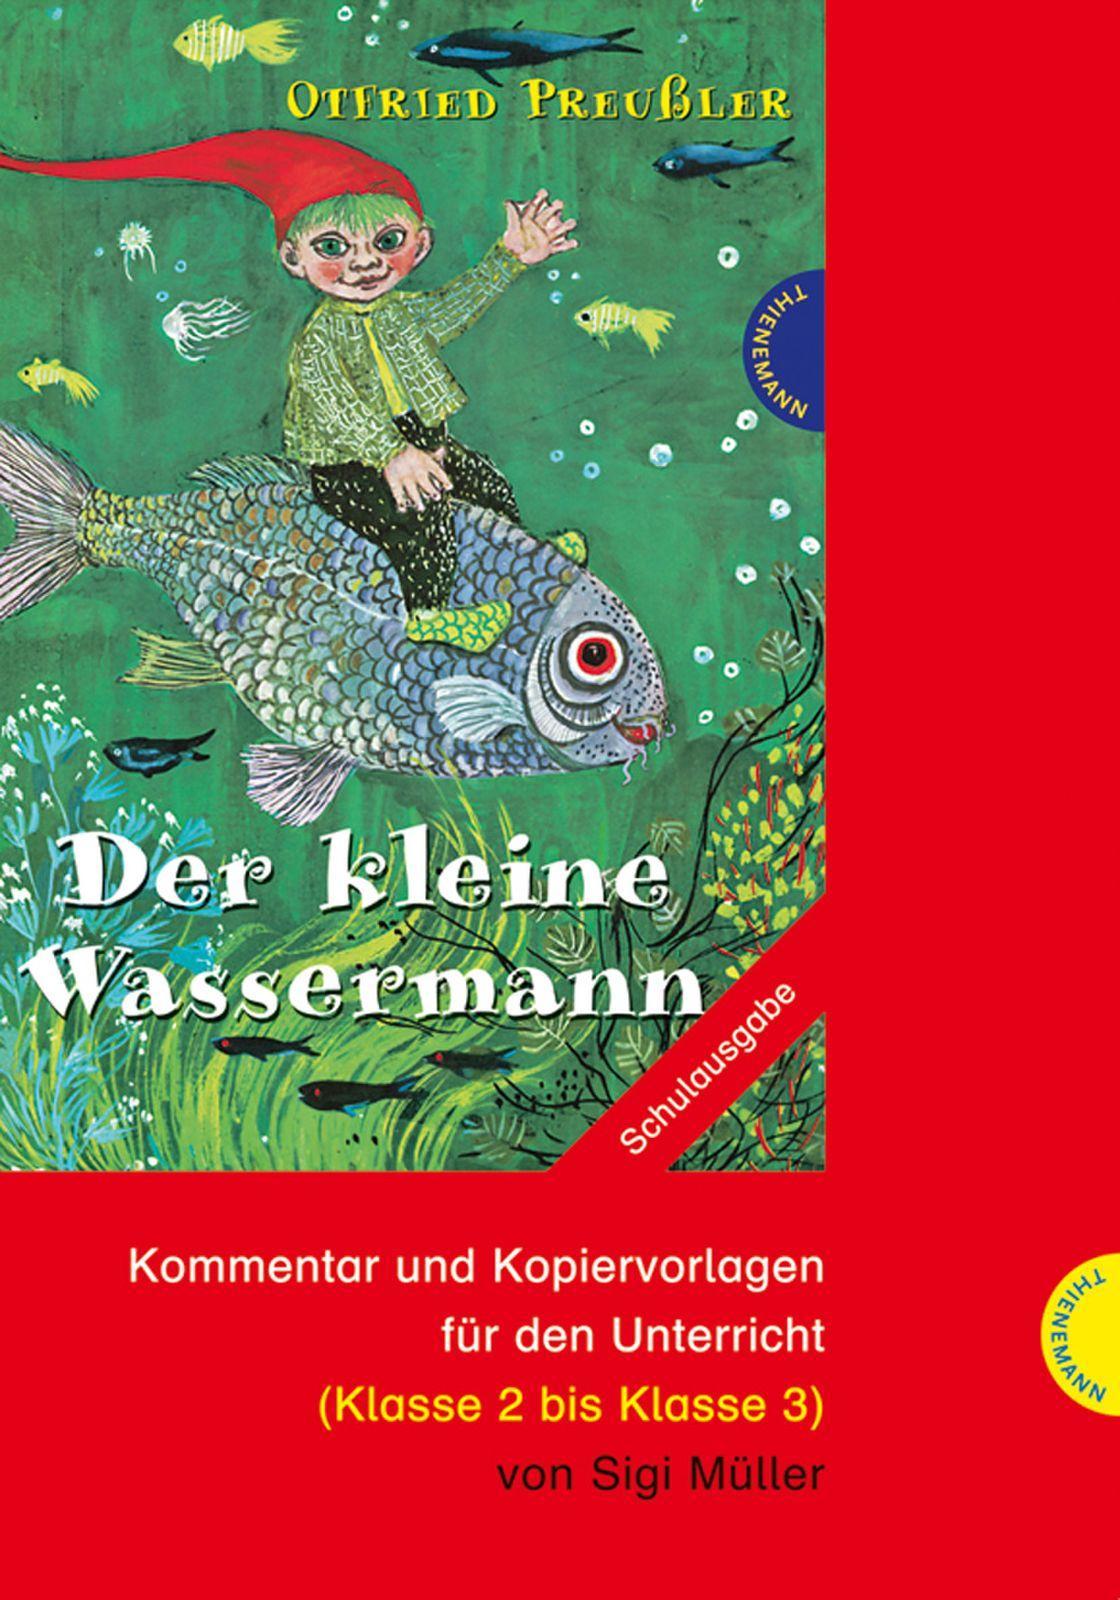 Otfried Preußler: Der kleine Wassermann (Mängelexemplar)